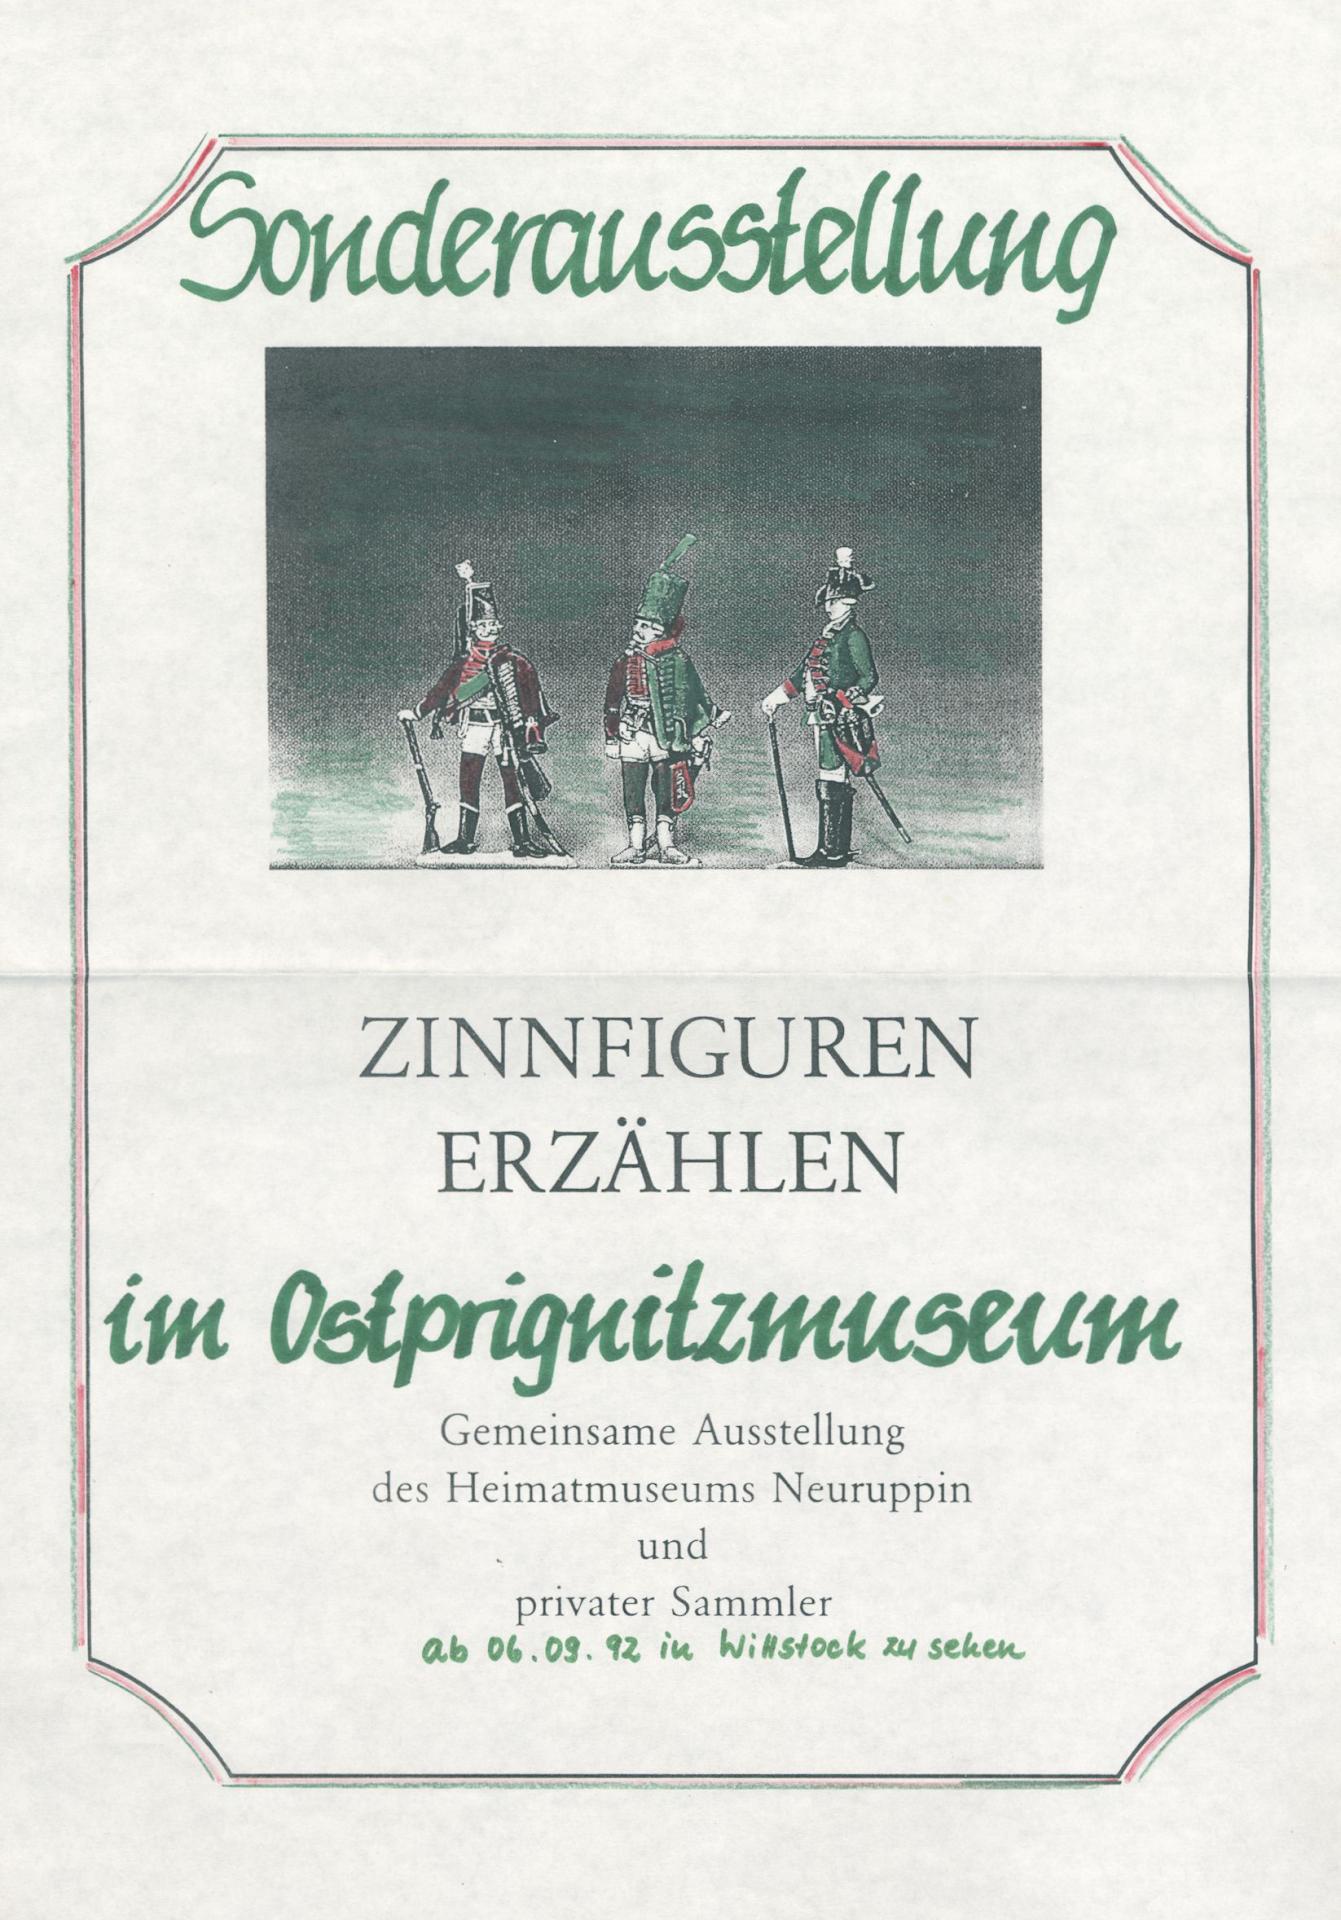 1992 Zinnfiguren erzählen - in Kooperation mit dem Heimatmuseum Neuruppin und privaten Sammlern